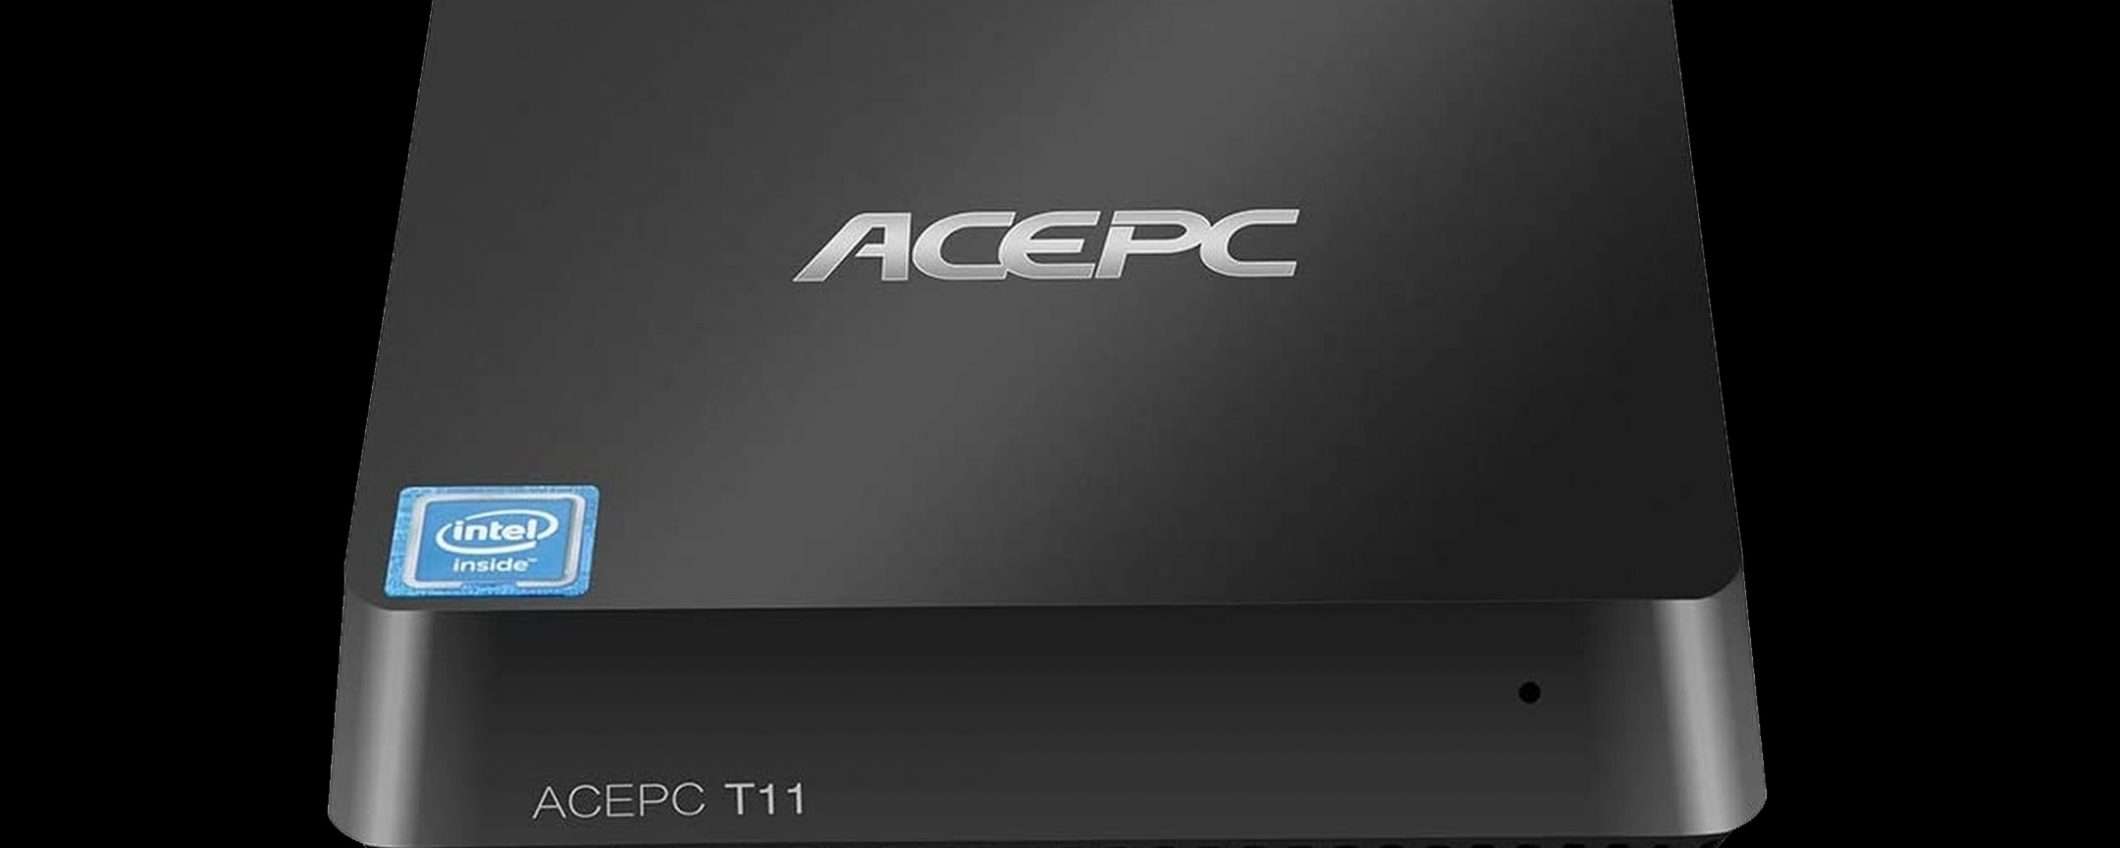 Mini PC ACEPC T11 da 8/128GB in offerta lampo su Amazon!